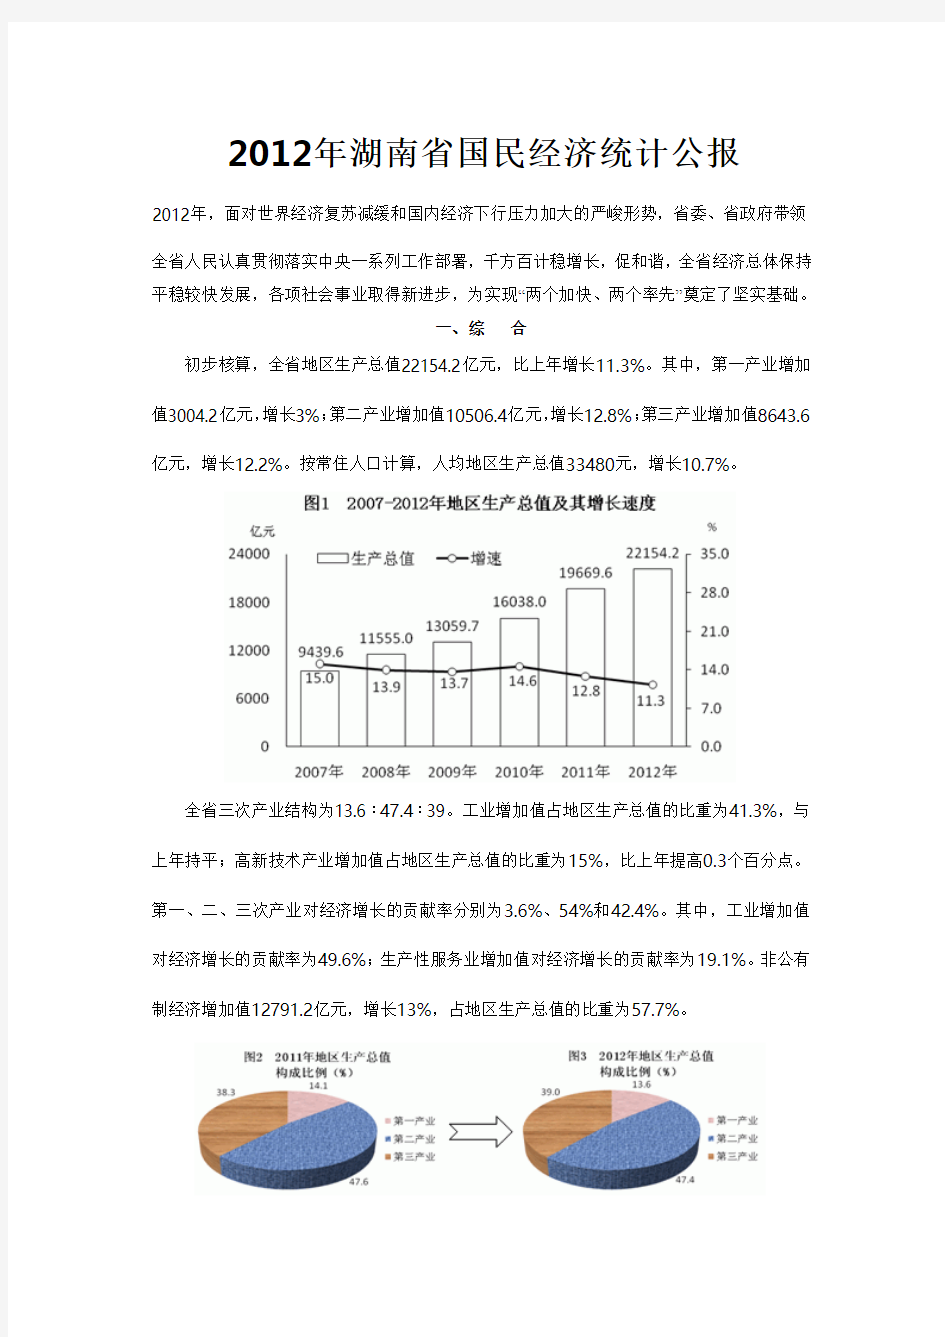 2012年湖南省国民经济统计公报